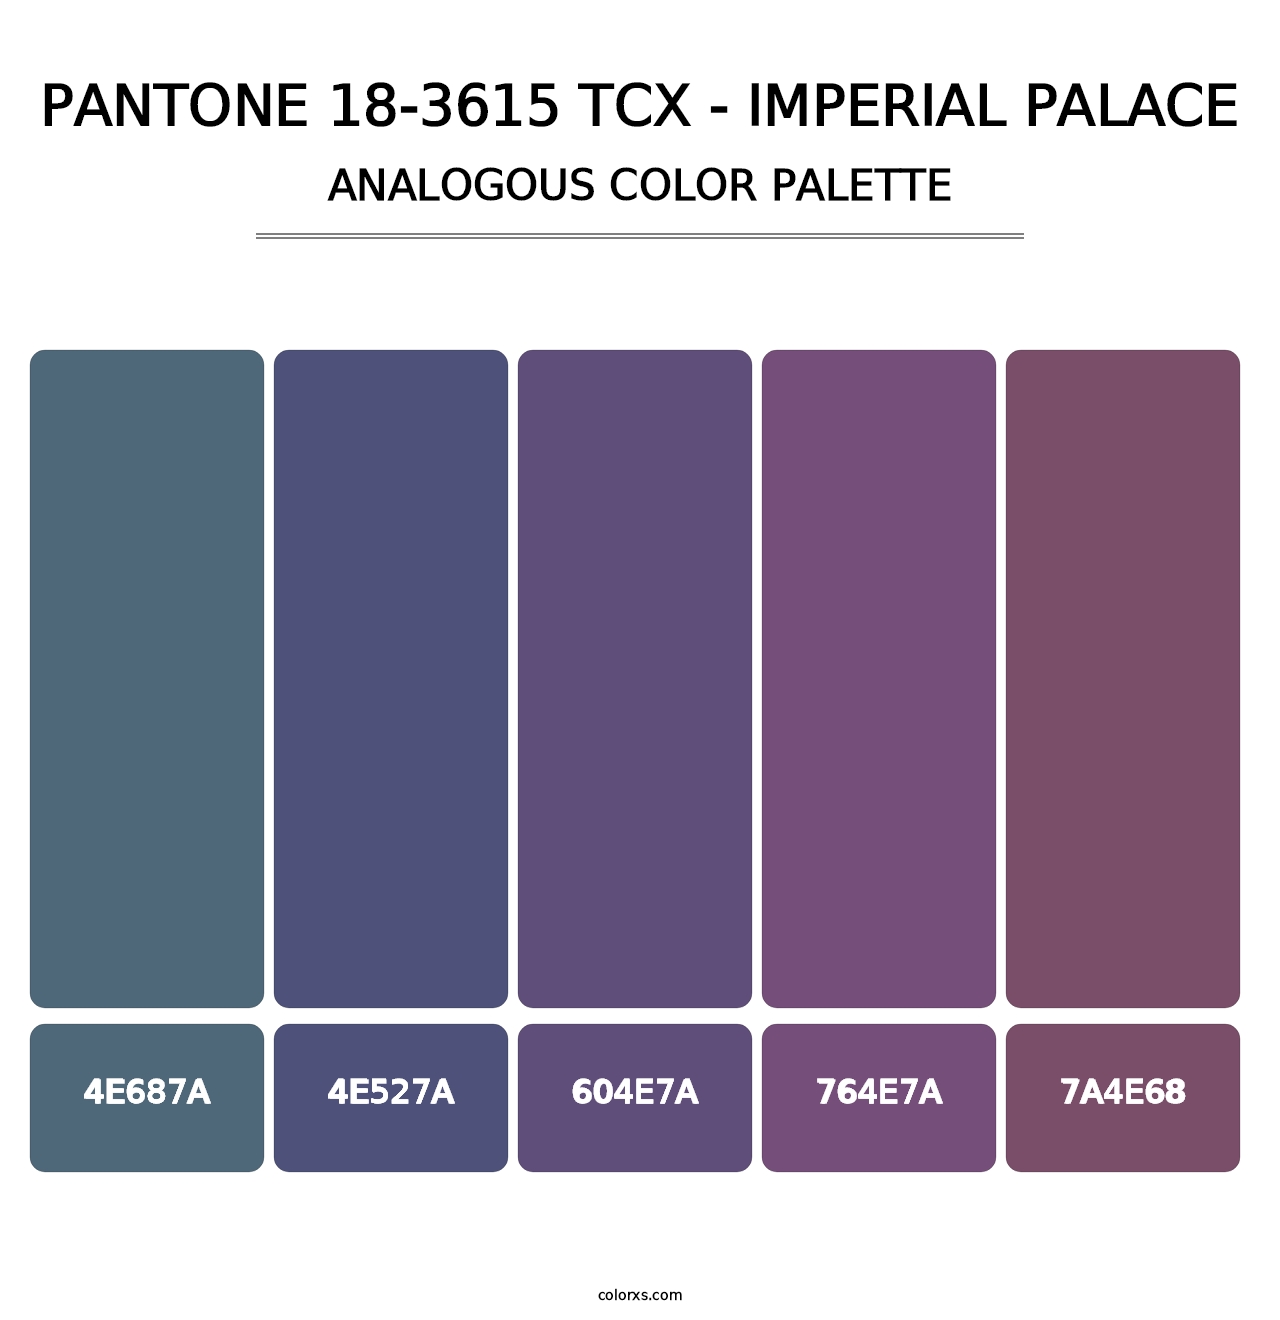 PANTONE 18-3615 TCX - Imperial Palace - Analogous Color Palette